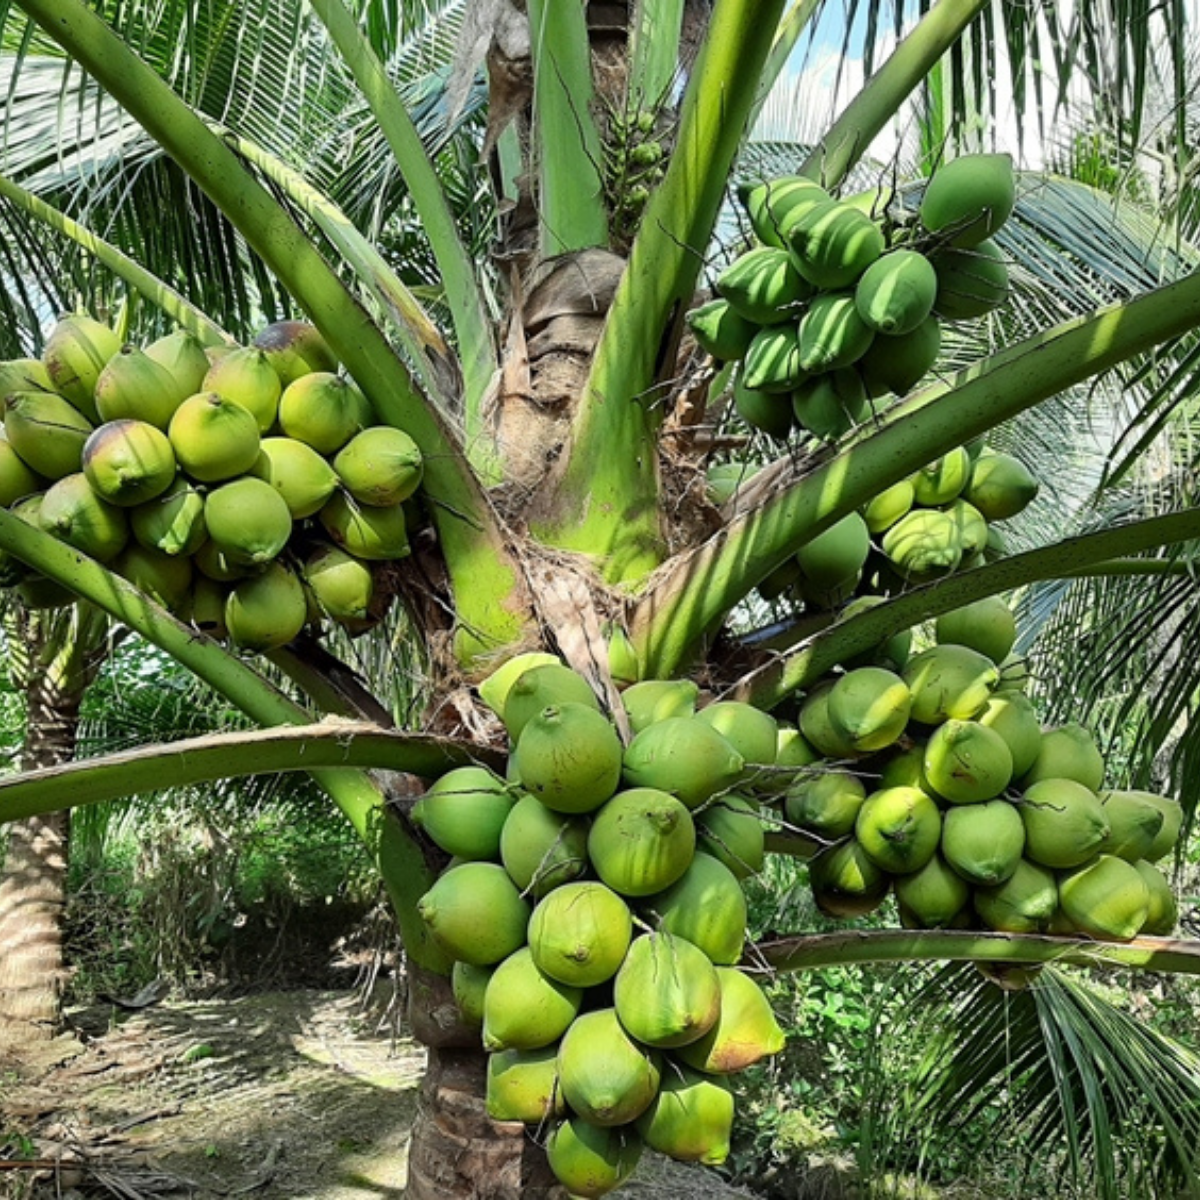 Chọn cây dừa giống tốt để lấy mật dừa